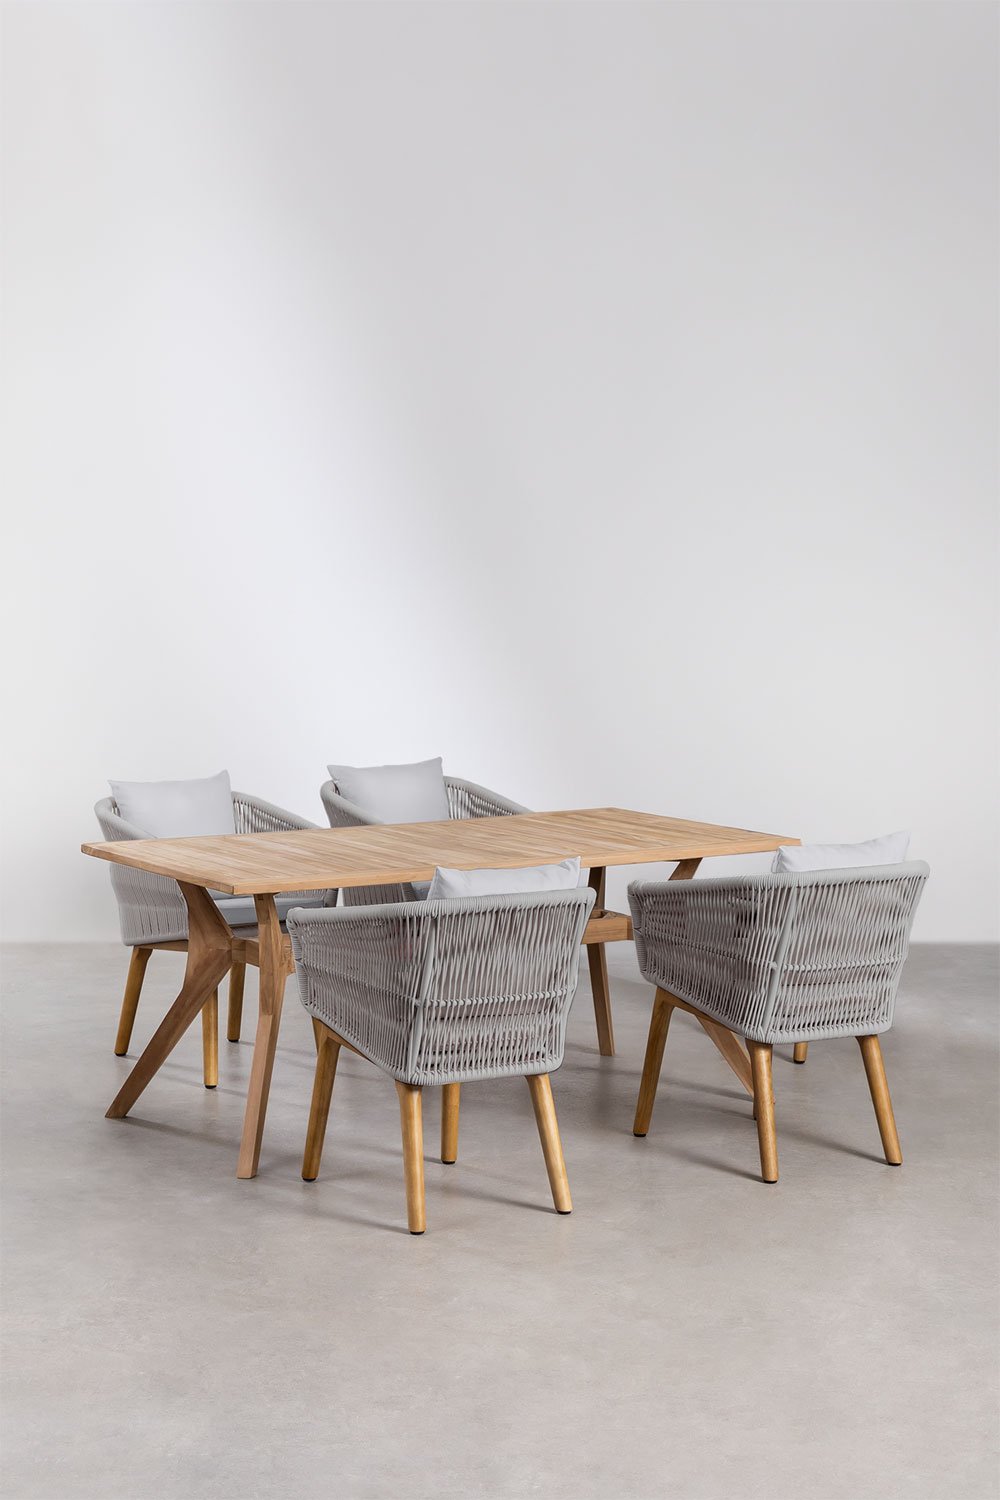 Yolen rechthoekige teakhouten tafelset (180x90 cm) en 4 Barker eetkamerstoelen, galerij beeld 1